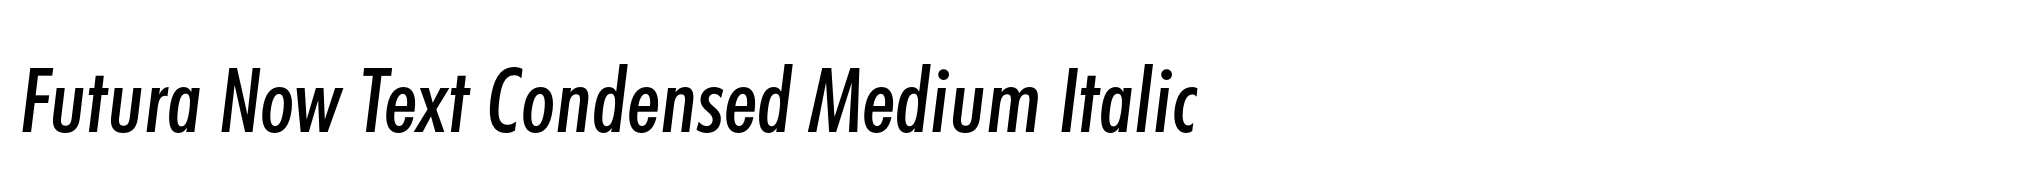 Futura Now Text Condensed Medium Italic image